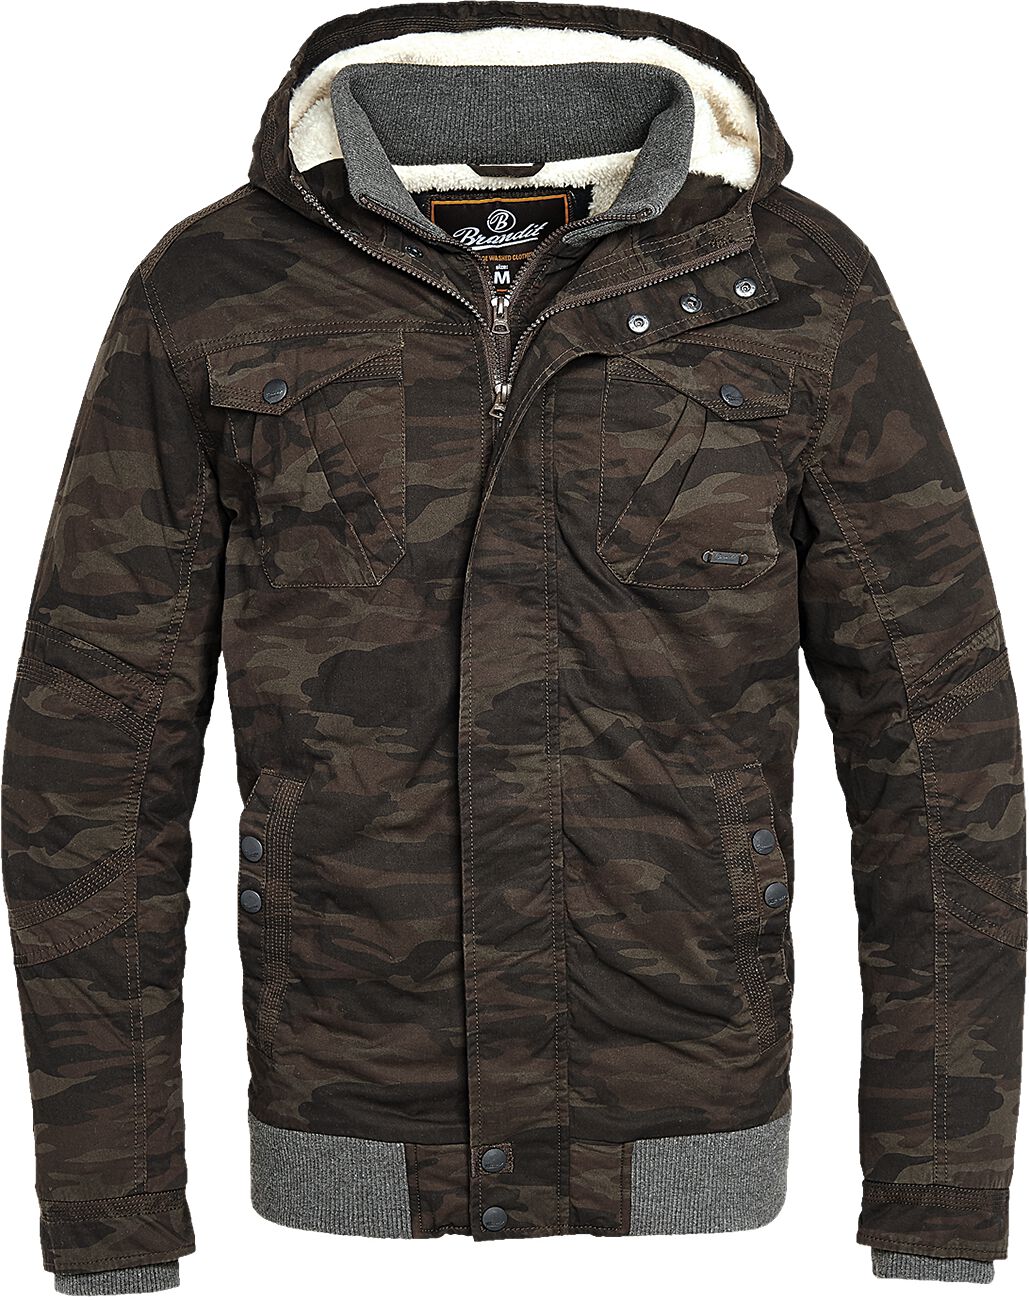 Brandit - Camouflage/Flecktarn Winterjacke - Parkmont Jacket - S bis 5XL - für Männer - Größe 3XL - camouflage von Brandit